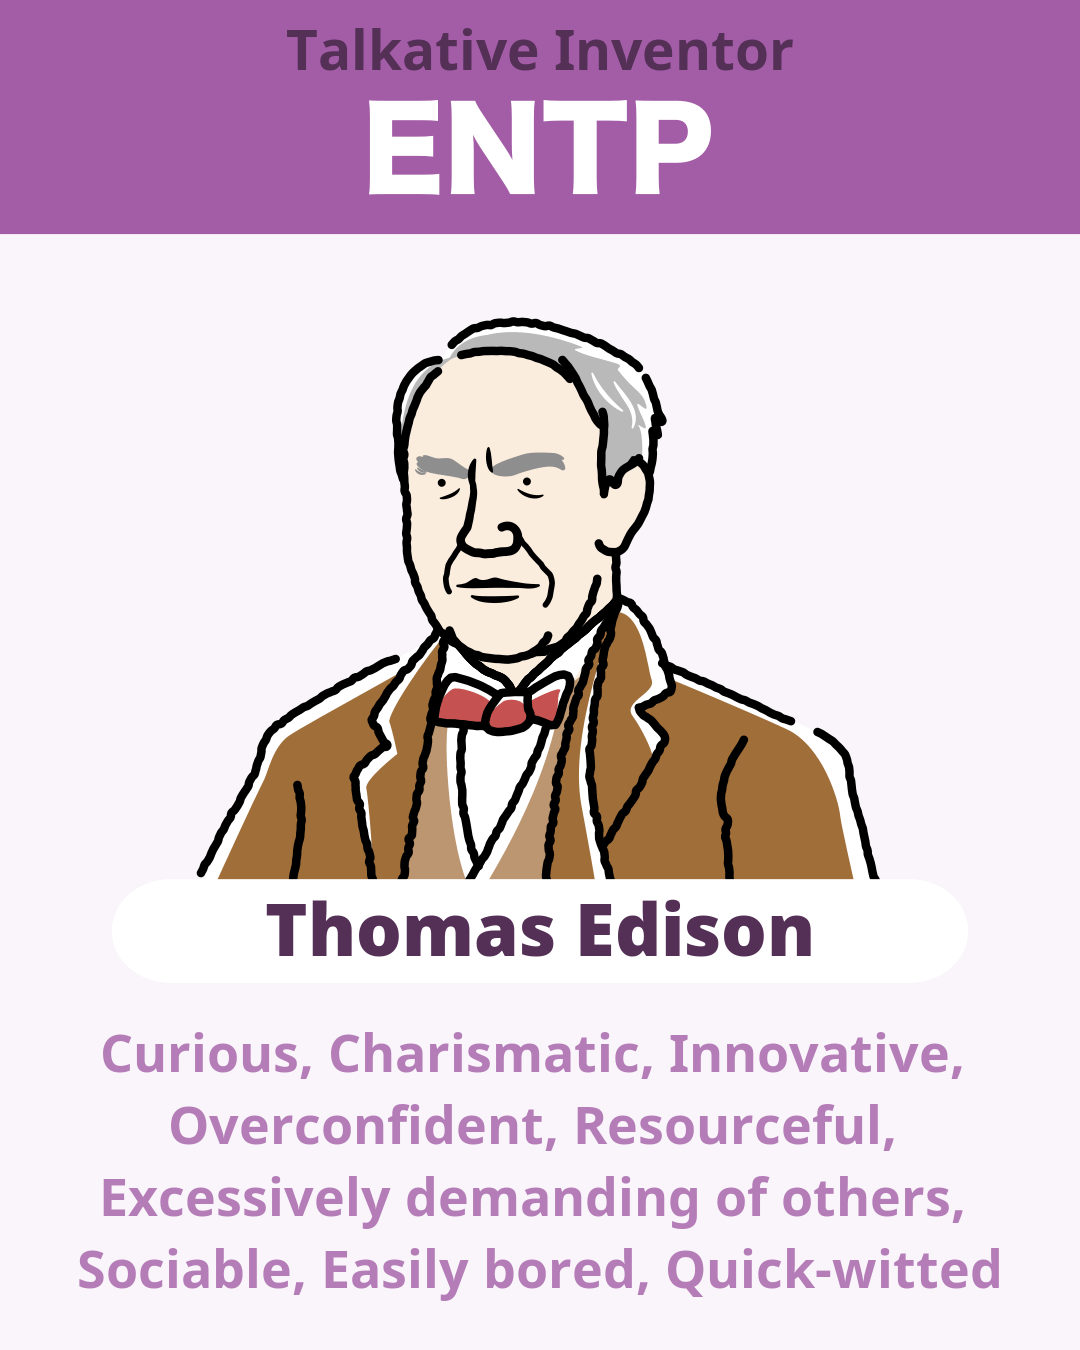 Thomas Edison - ENTP